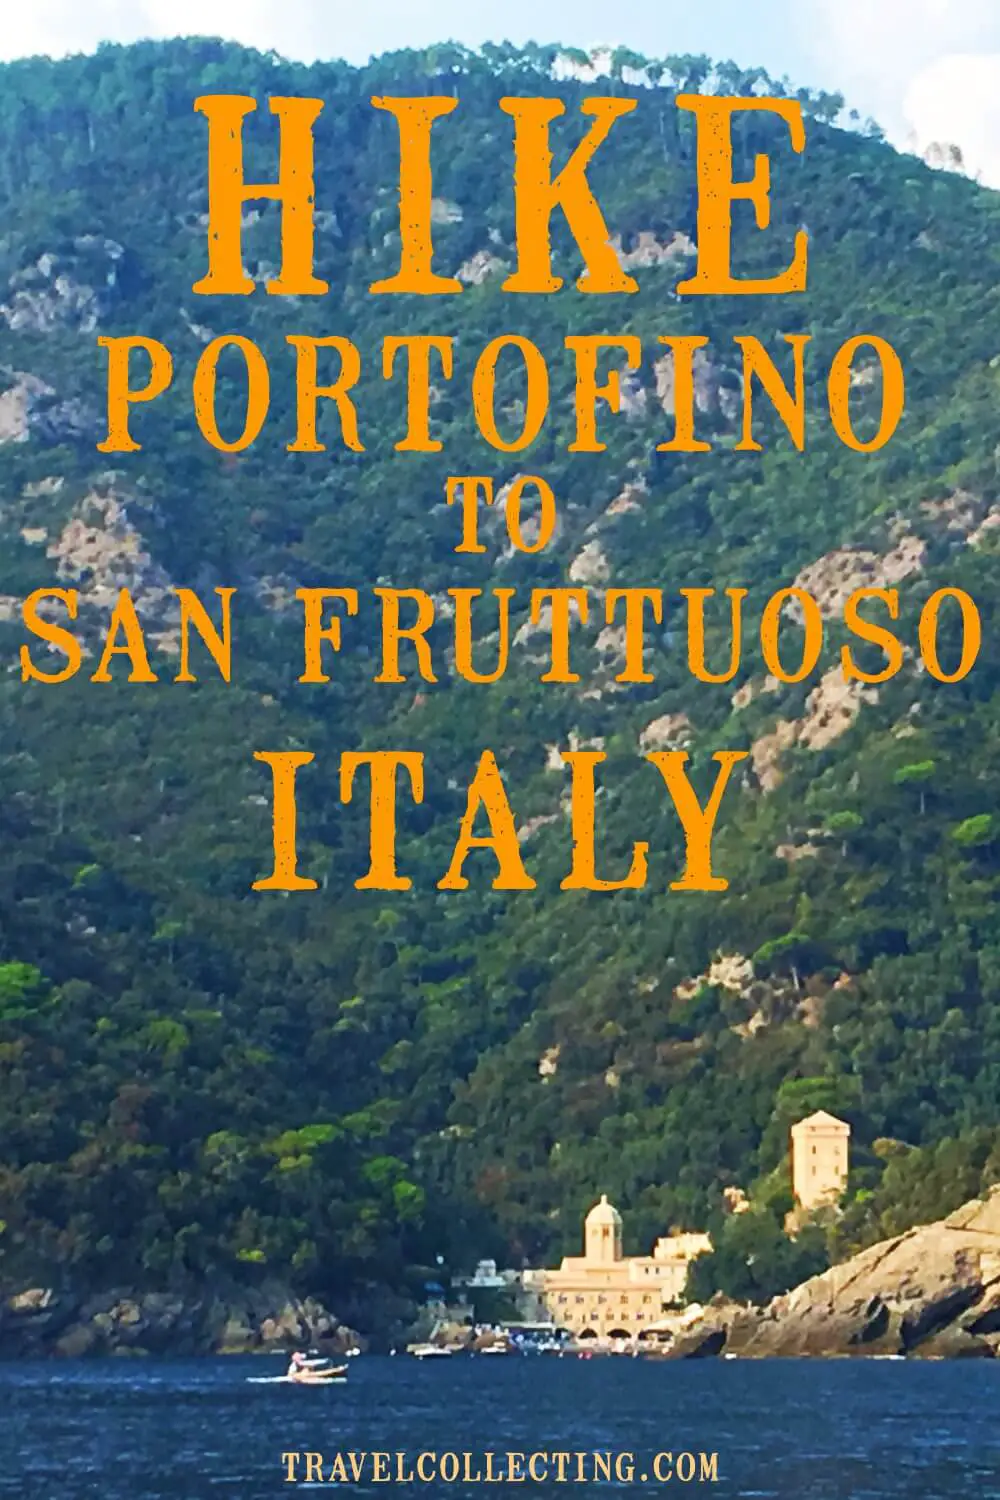 Hike Portofino to San Fruttuoso